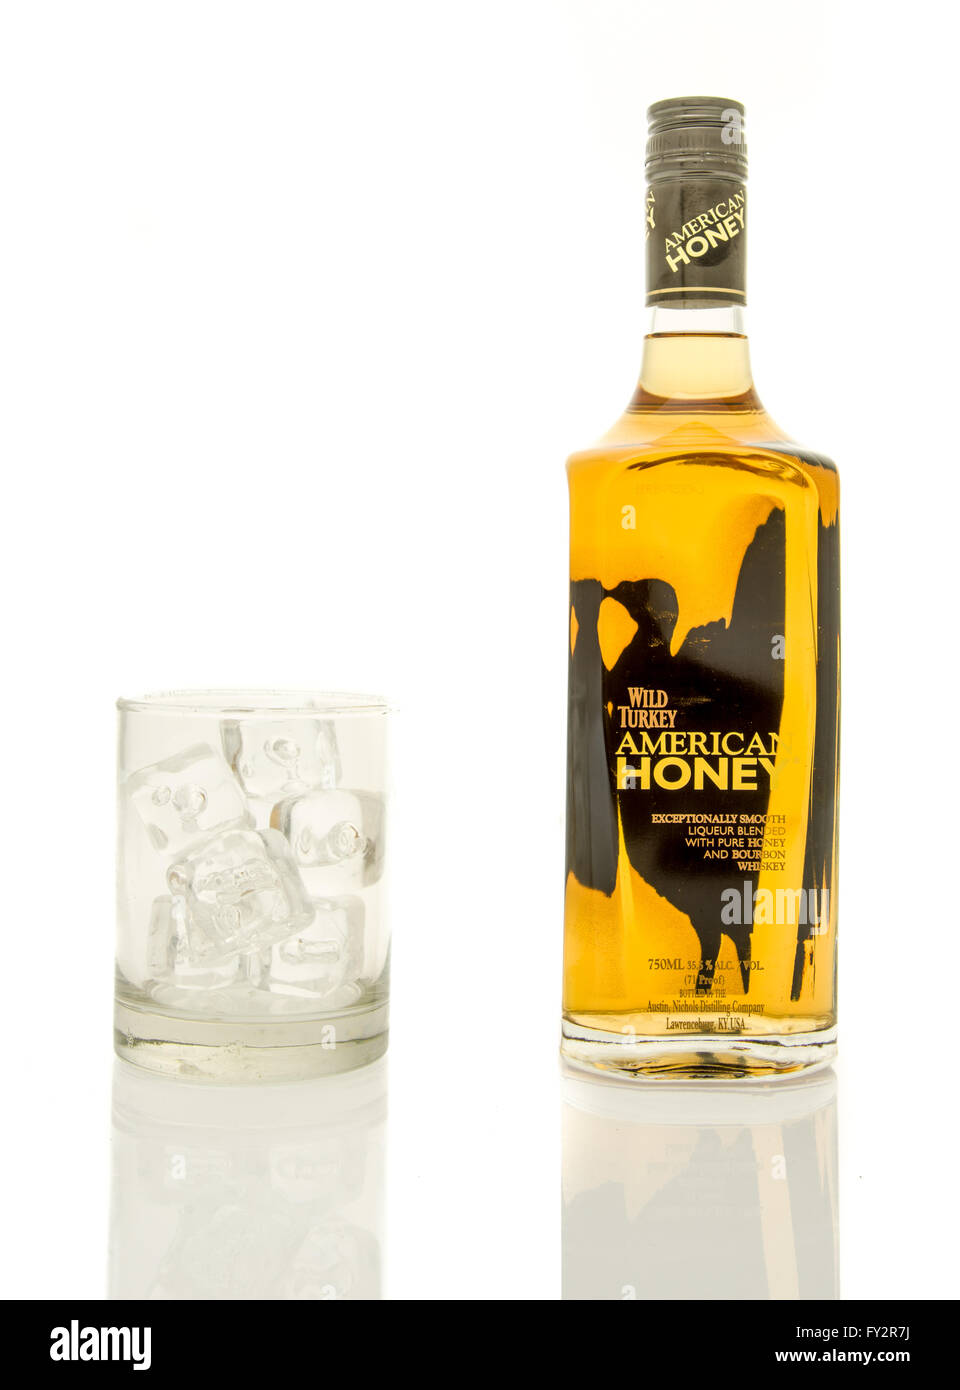 Winneconne, WI - 19 mars 2016 : une bouteille de whisky américain Wild Turkey le miel avec un verre de glace. Banque D'Images